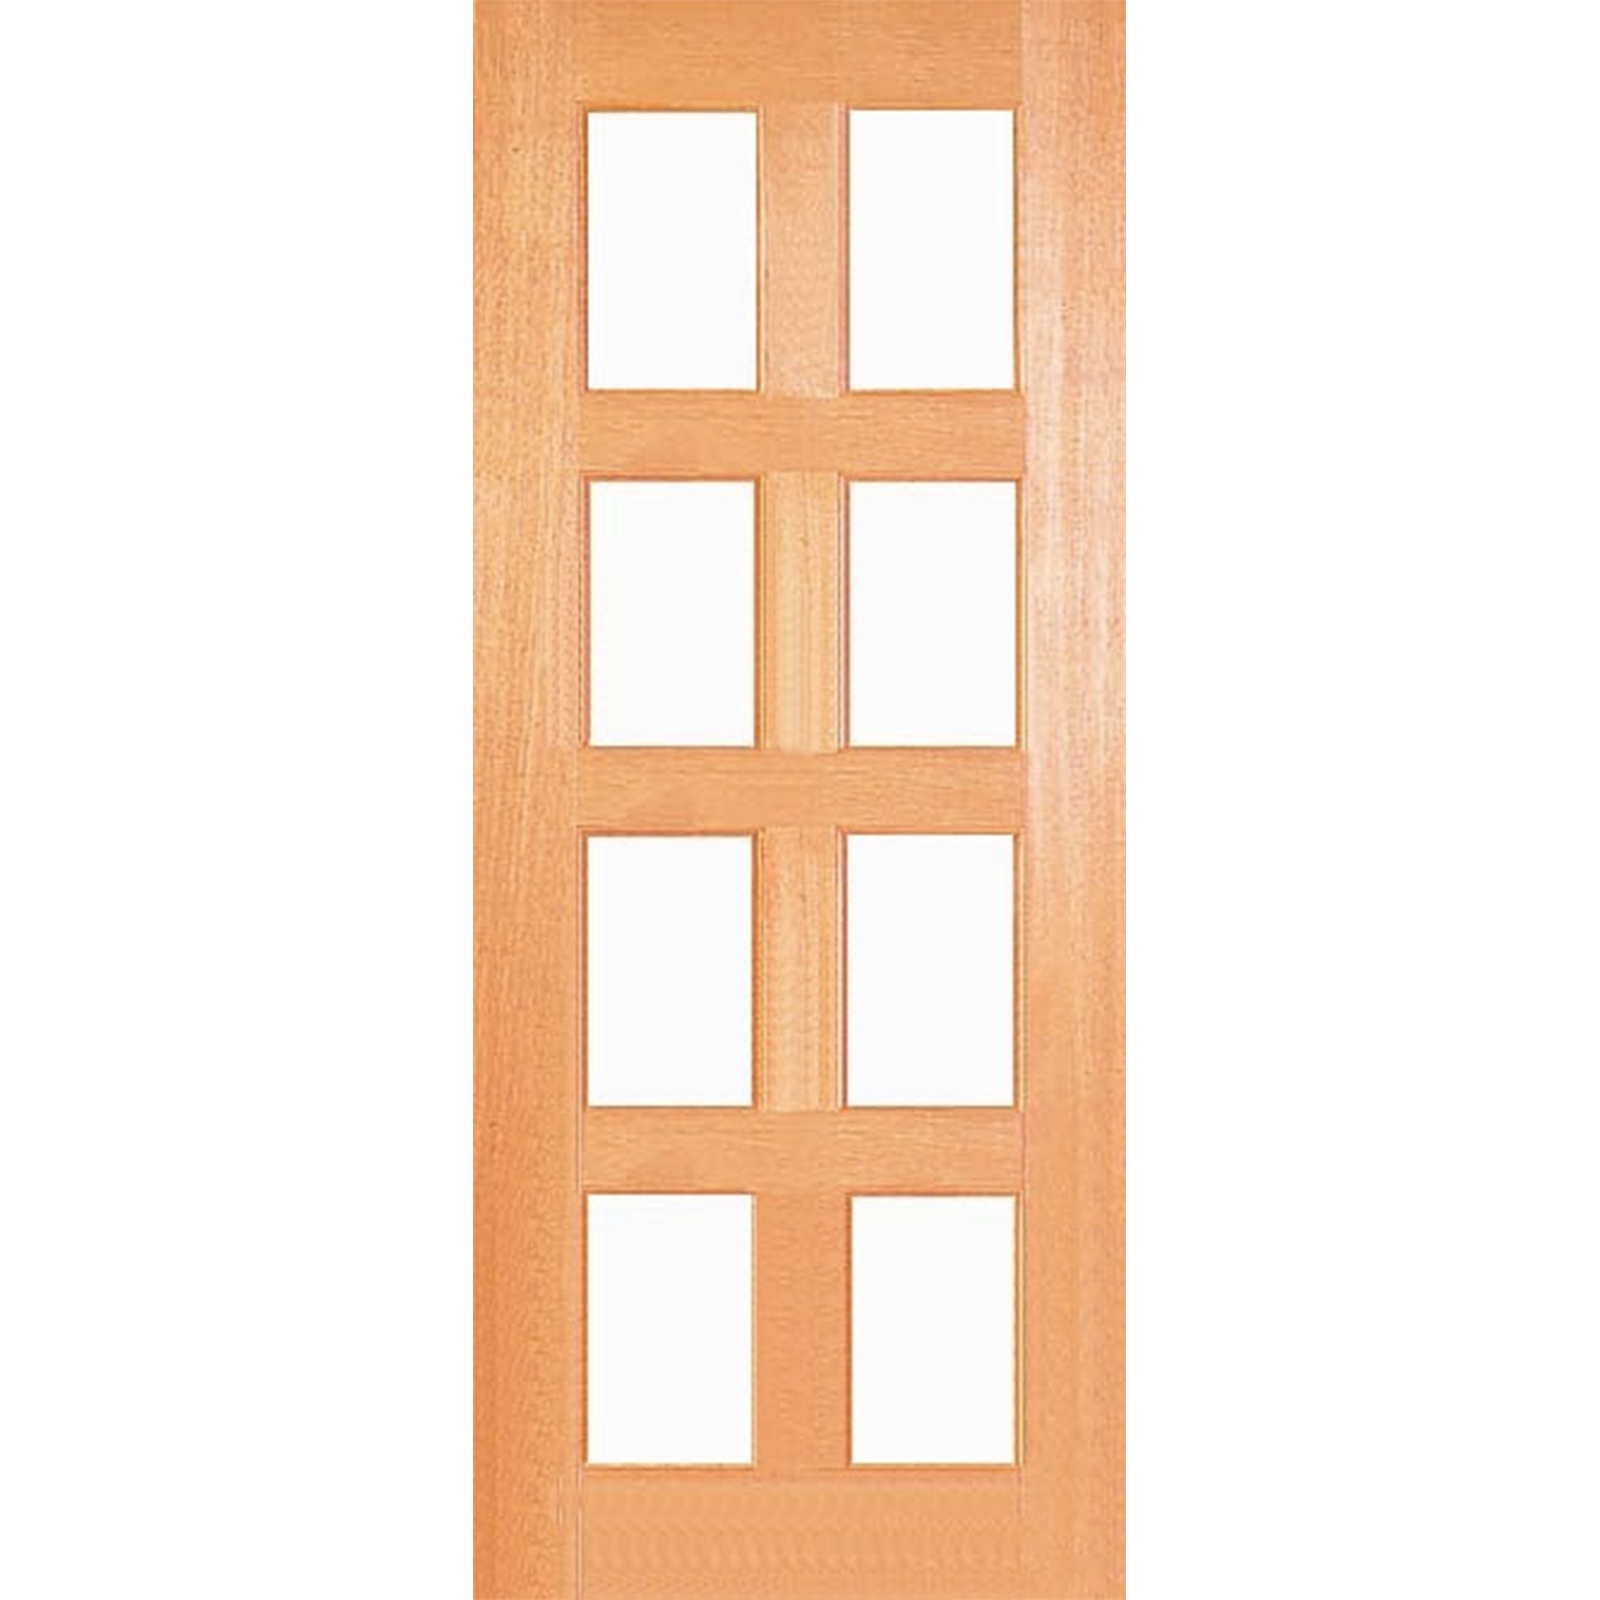 Woodcraft Doors 2040 x 820 x 35mm Kensington Clear Safety Glass Internal Door